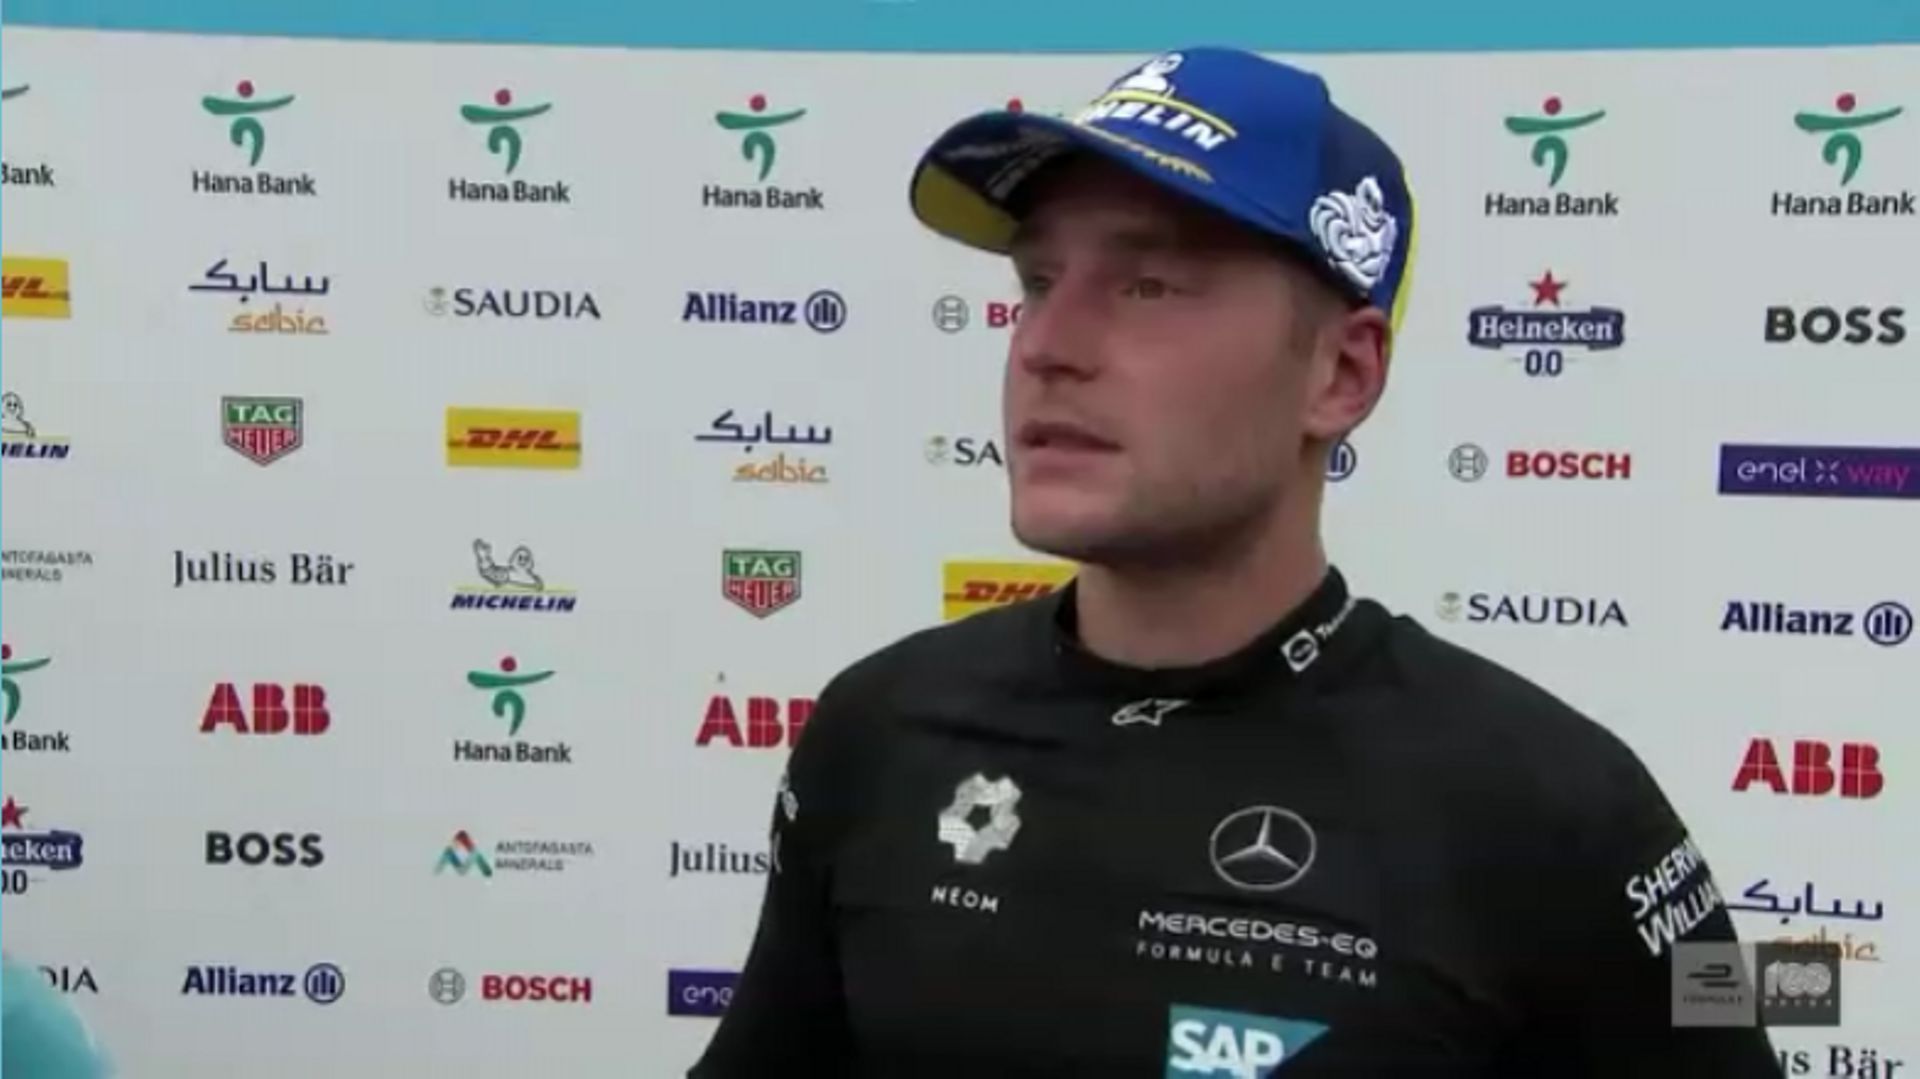 L’émotion du nouveau champion du monde Stoffel Vandoorne : "Le meilleur sentiment de ma vie"